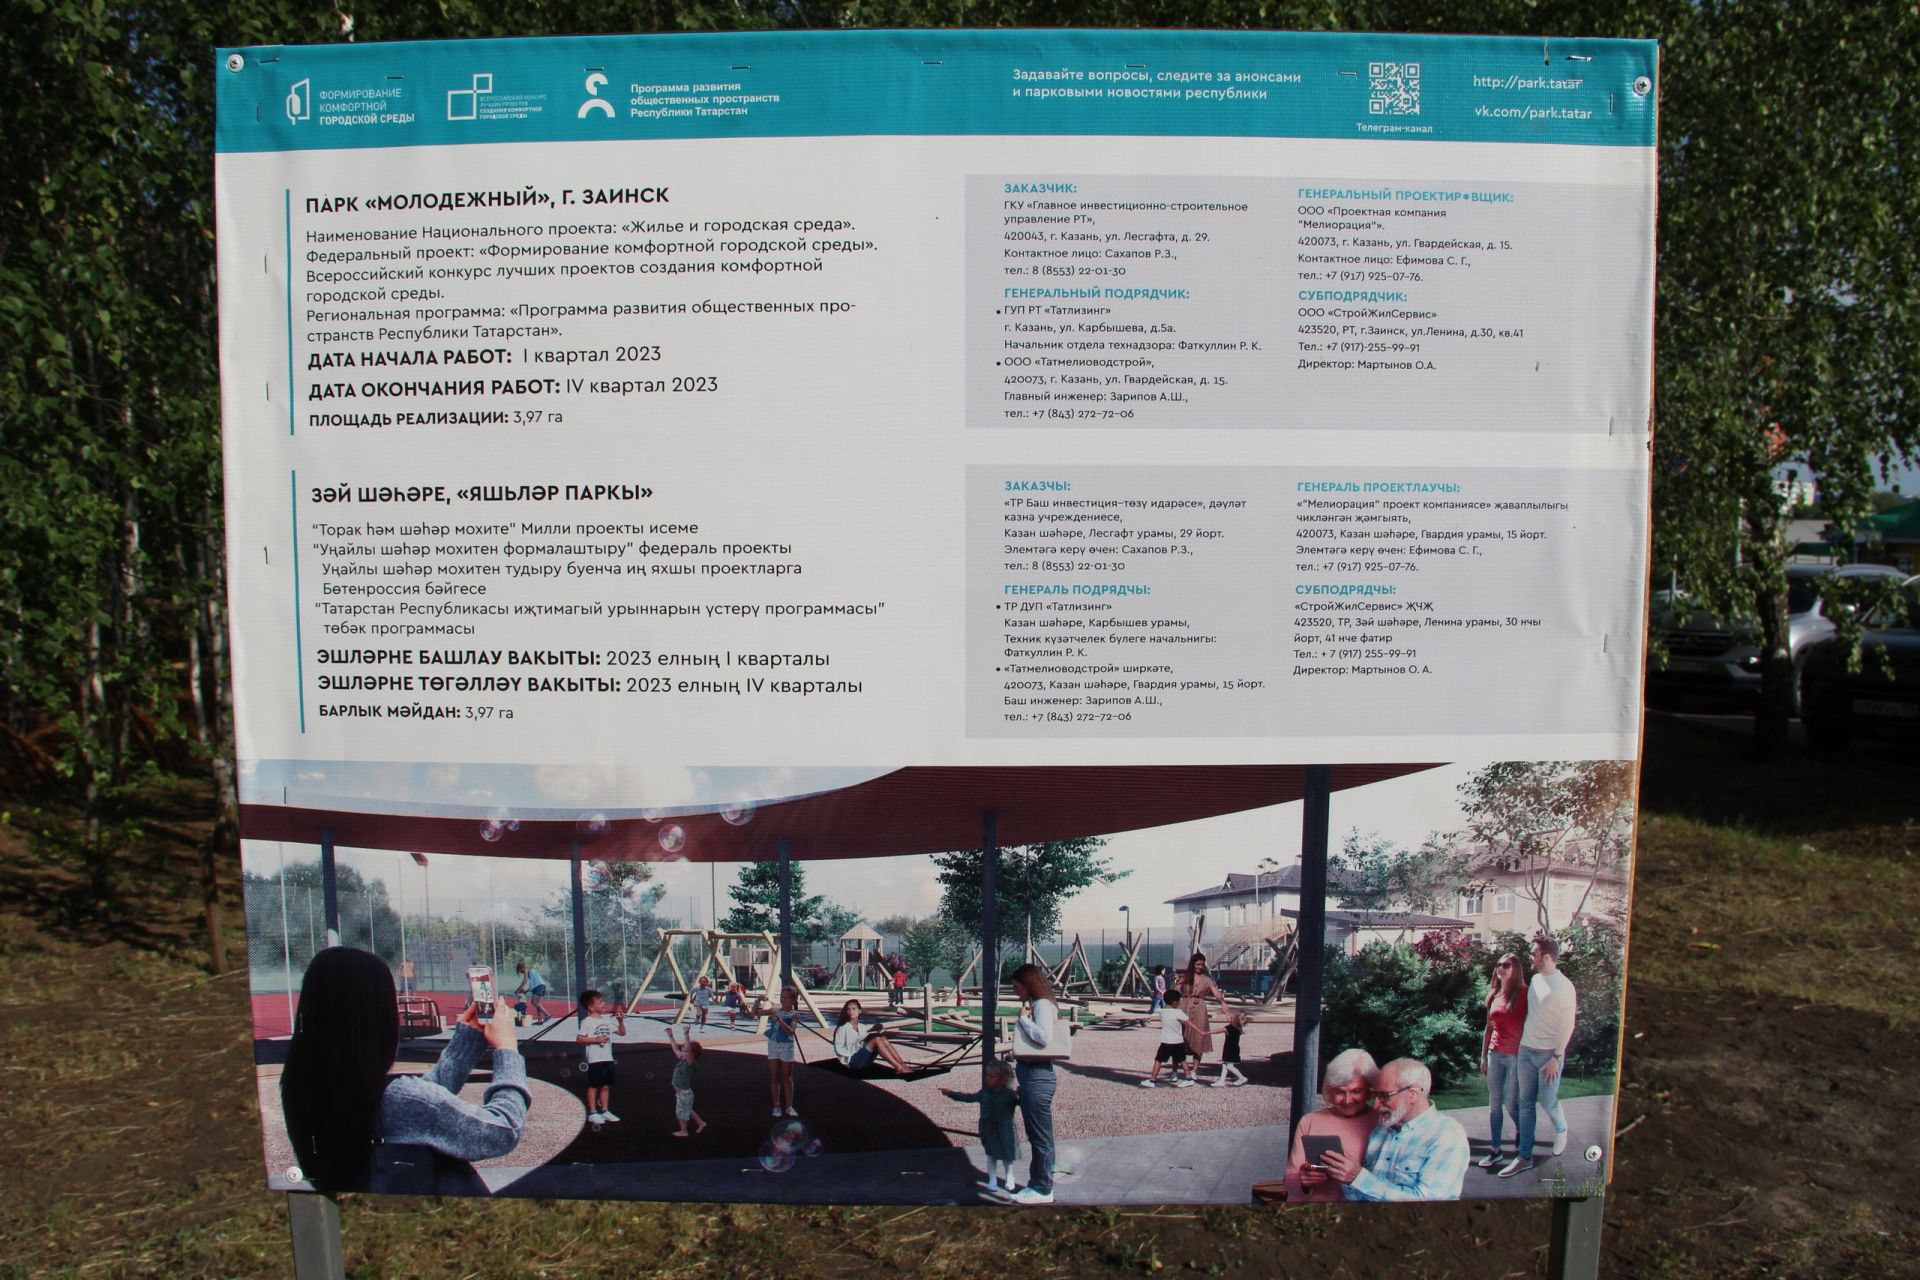 Станция скорой помощи, новый бассейн и парк «Молодежный»: Глава района лично контролирует качество строительства объектов в Заинске